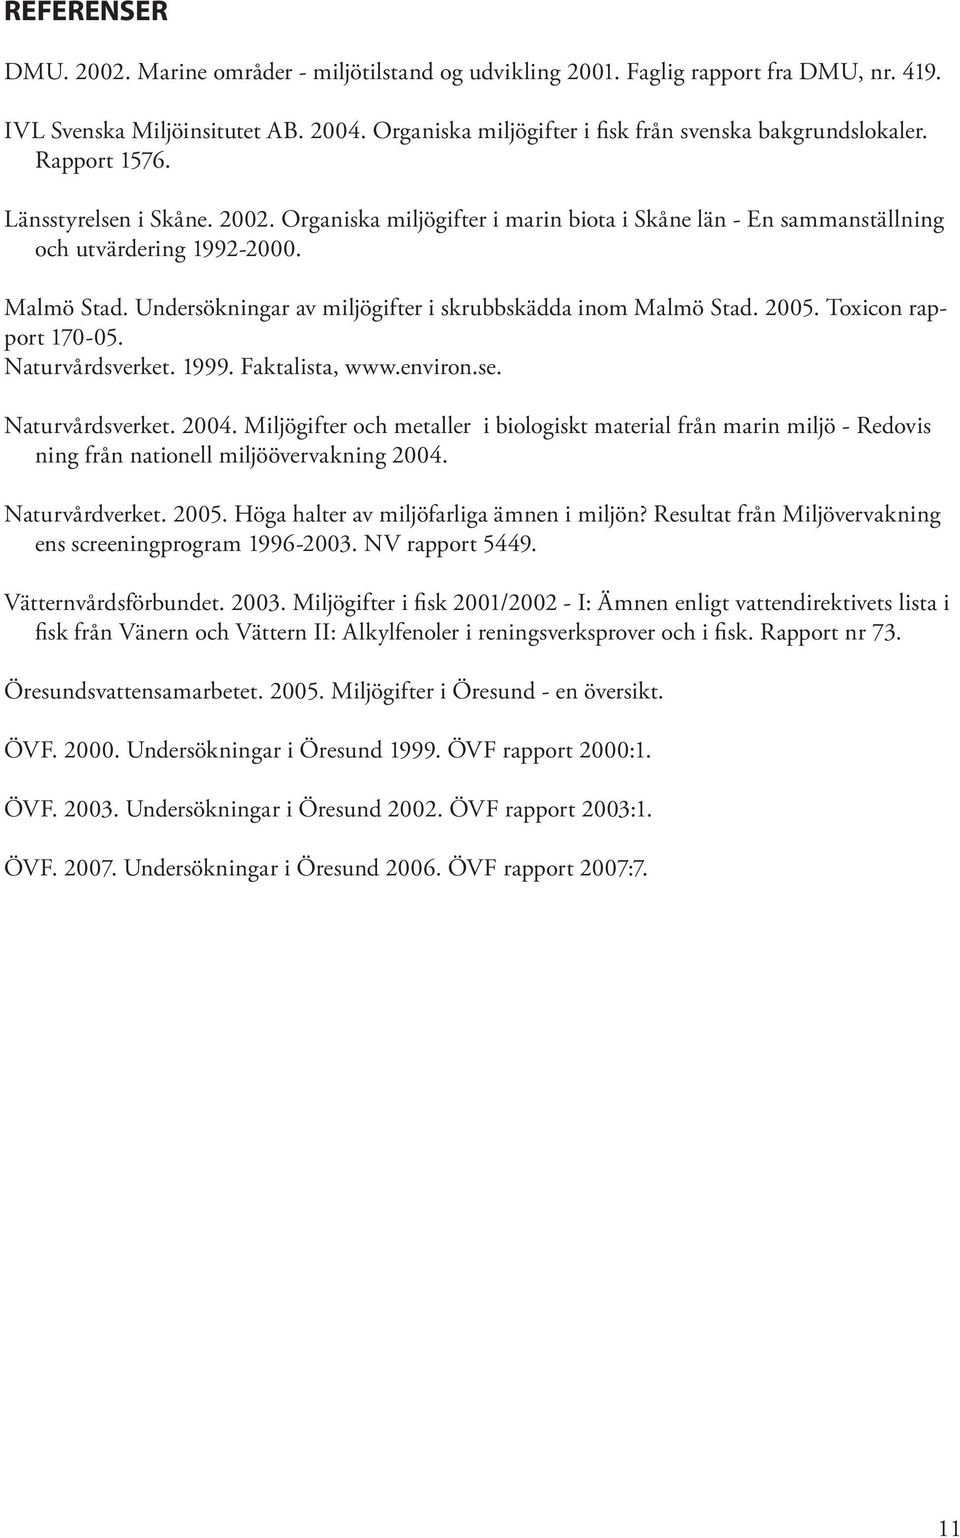 Malmö Stad. Undersökningar av miljögifter i skrubbskädda inom Malmö Stad. 2005. Toxicon rapport 170-05. Naturvårdsverket. 1999. Faktalista, www.environ.se. Naturvårdsverket. 2004.